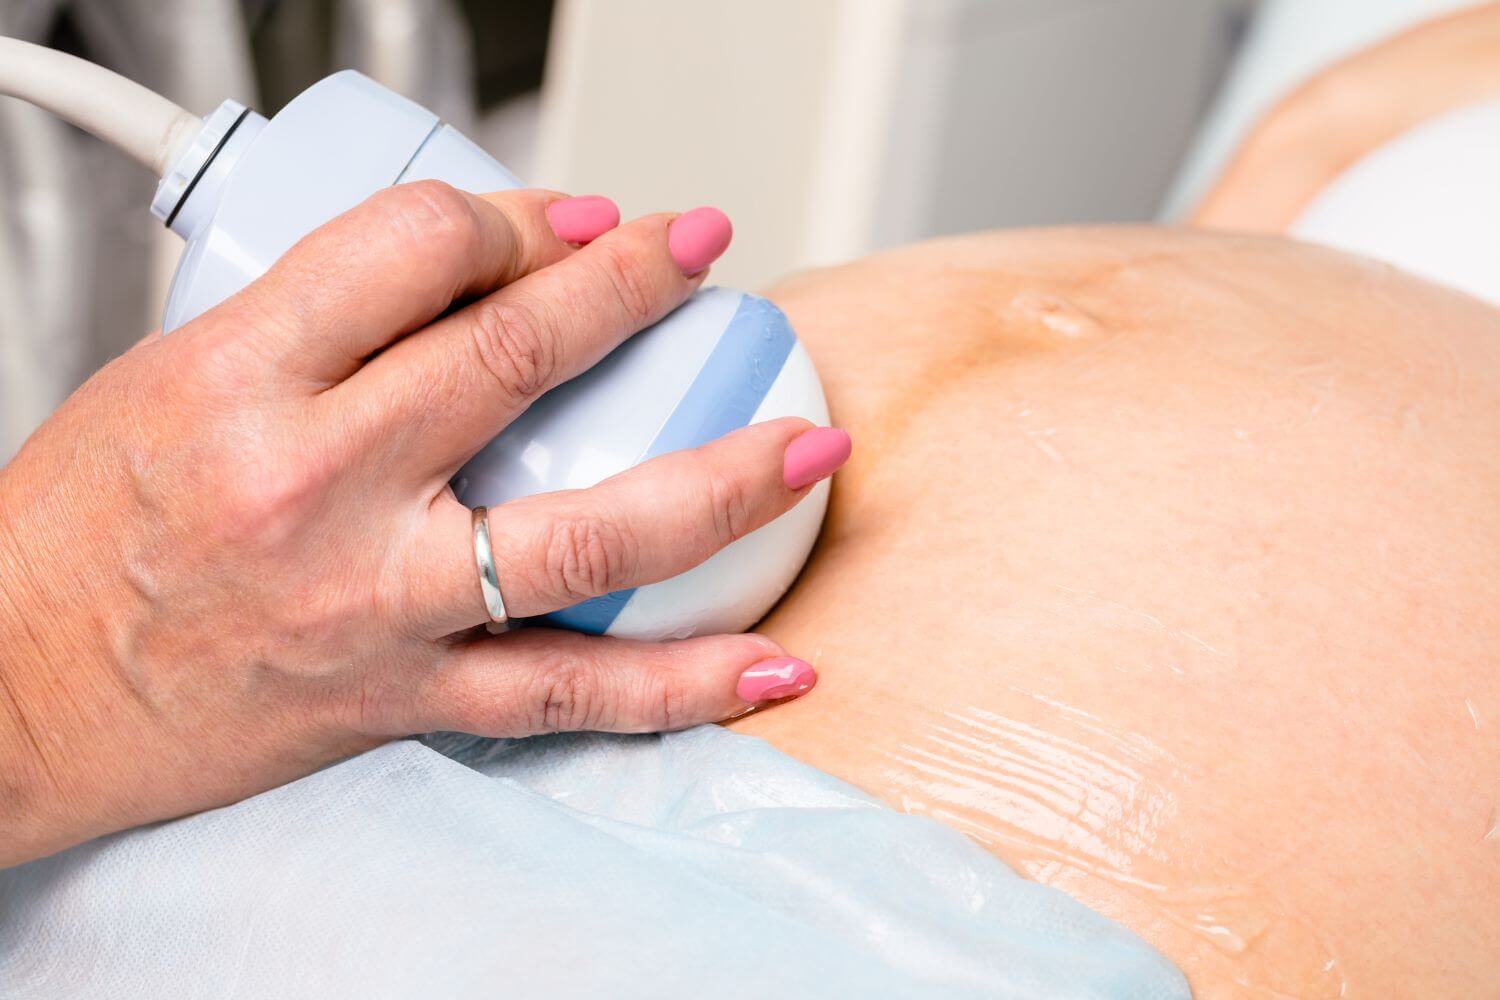 Pregnant woman undergoing an ultrasound